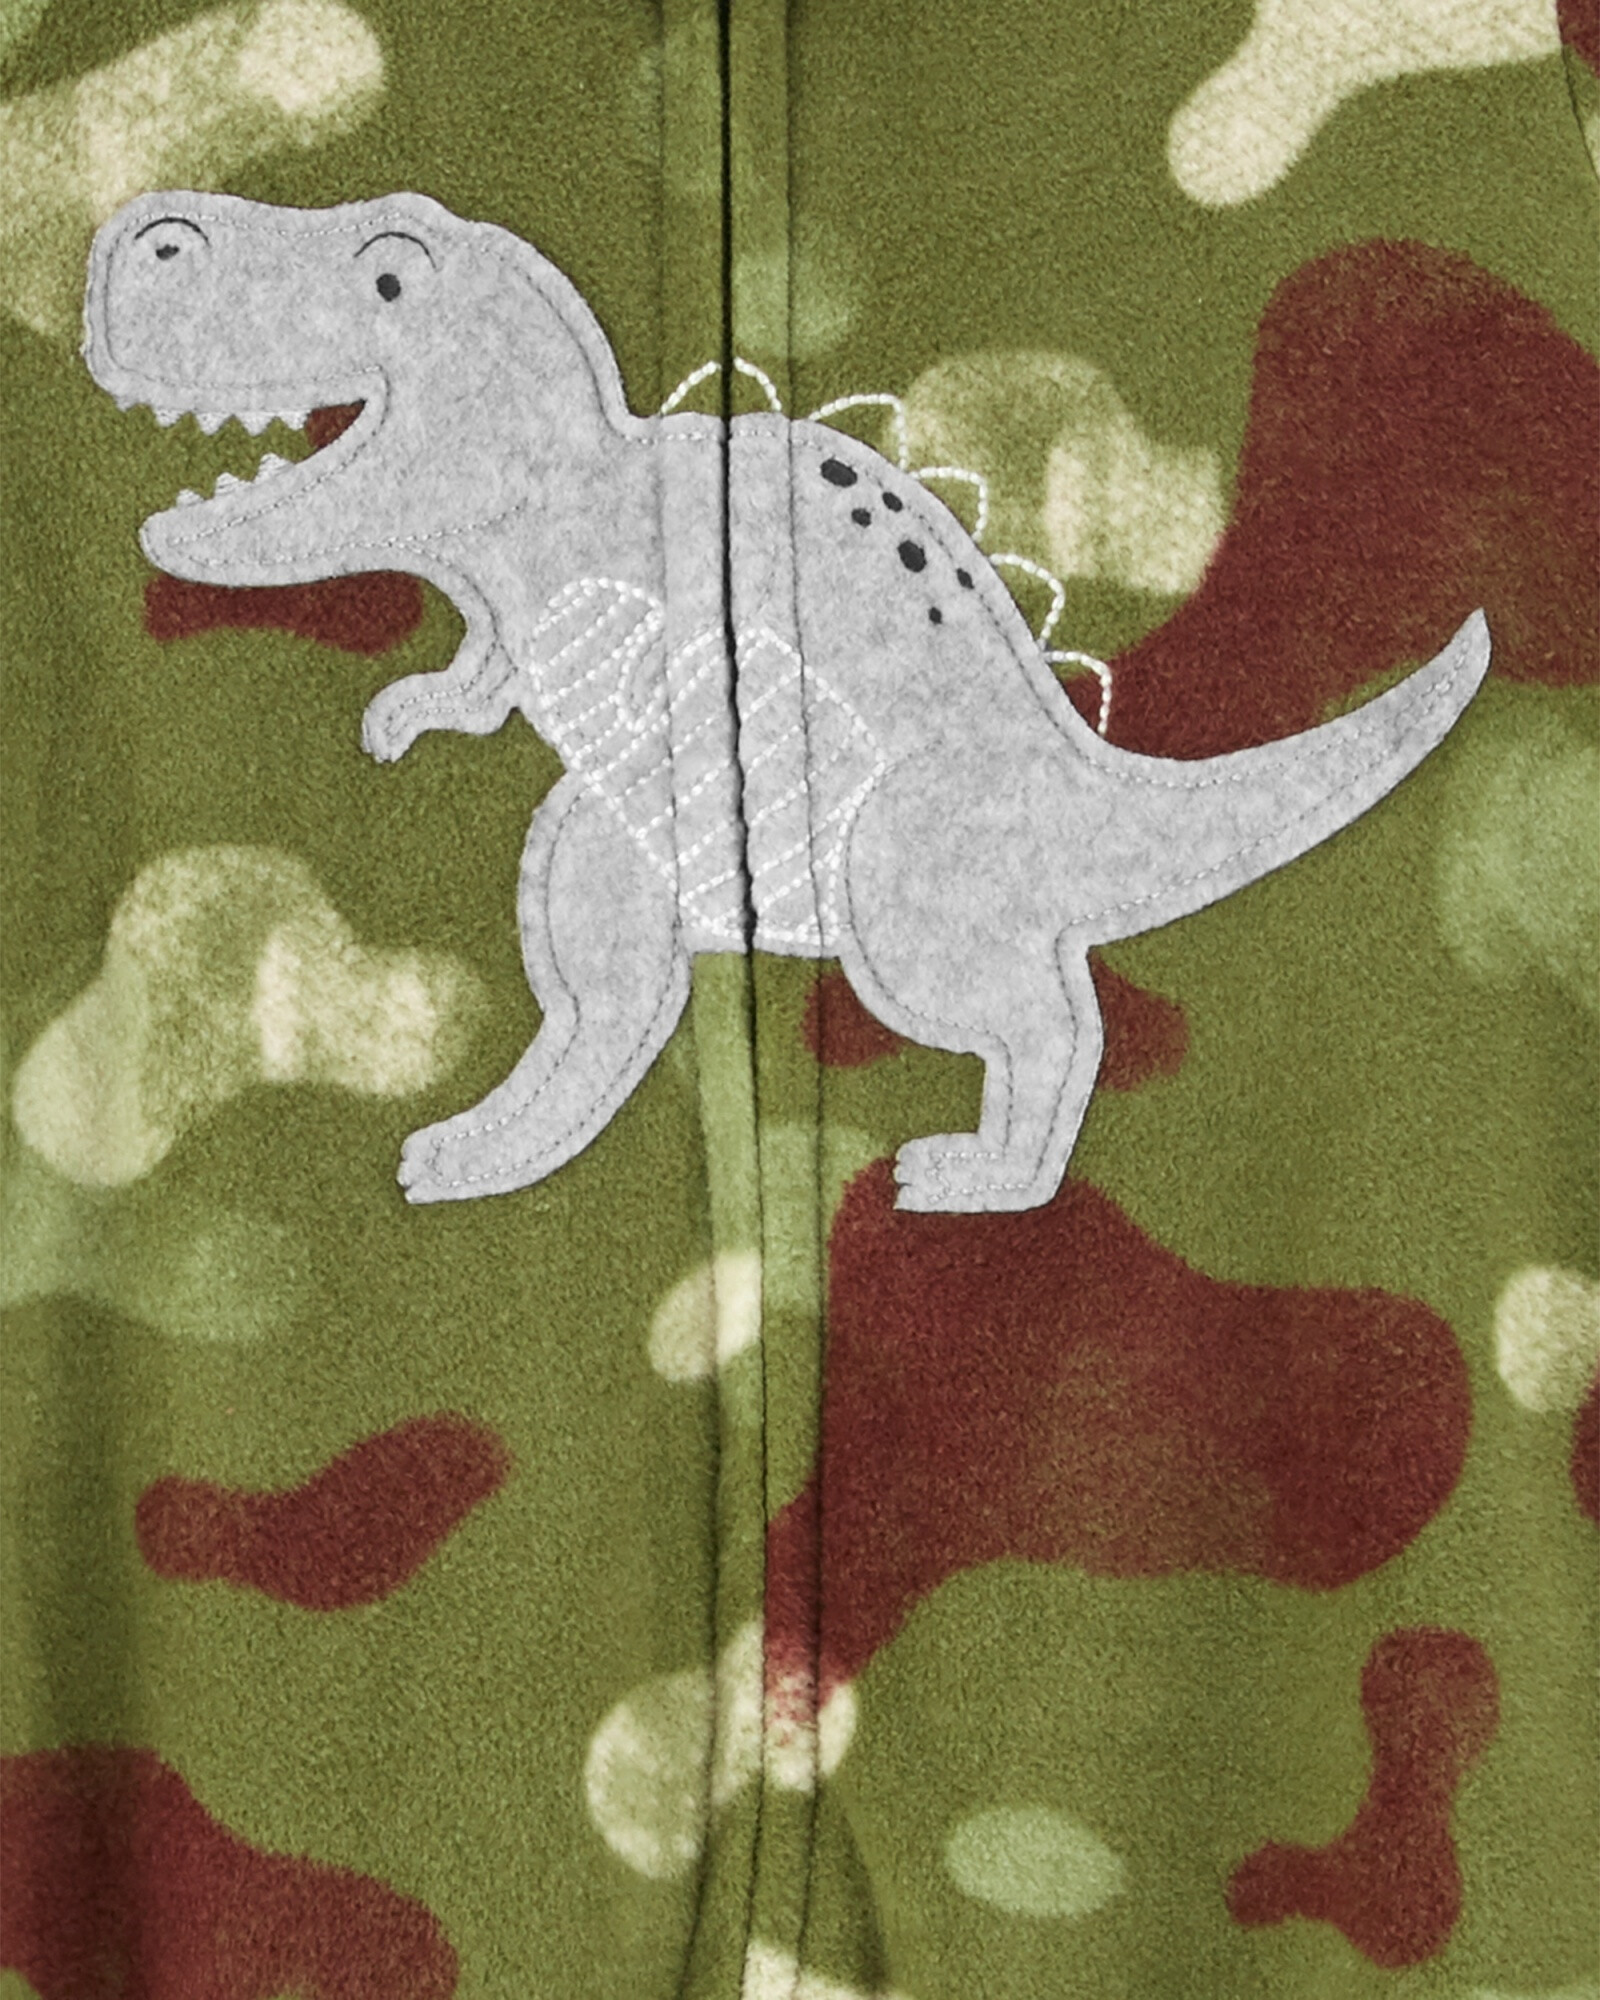 Pijama una pieza de micropolar con pie camuflado estampa dinosaurio 0